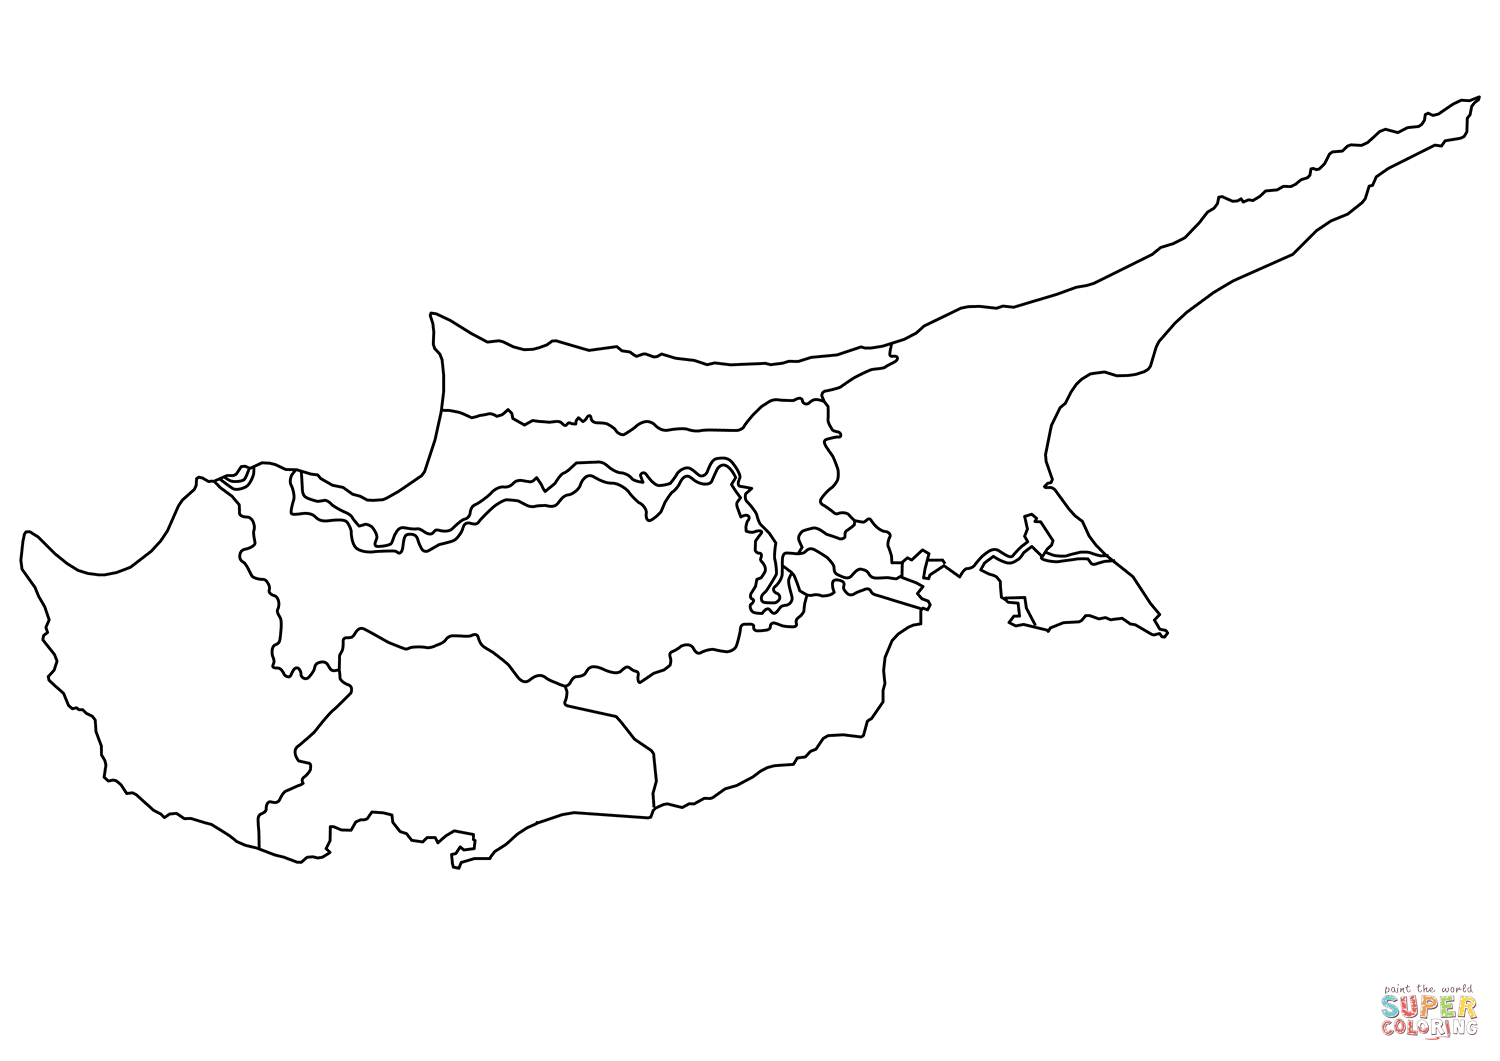 Dibujo de mapa mudo de chipre con regiones para colorear dibujos para colorear imprimir gratis